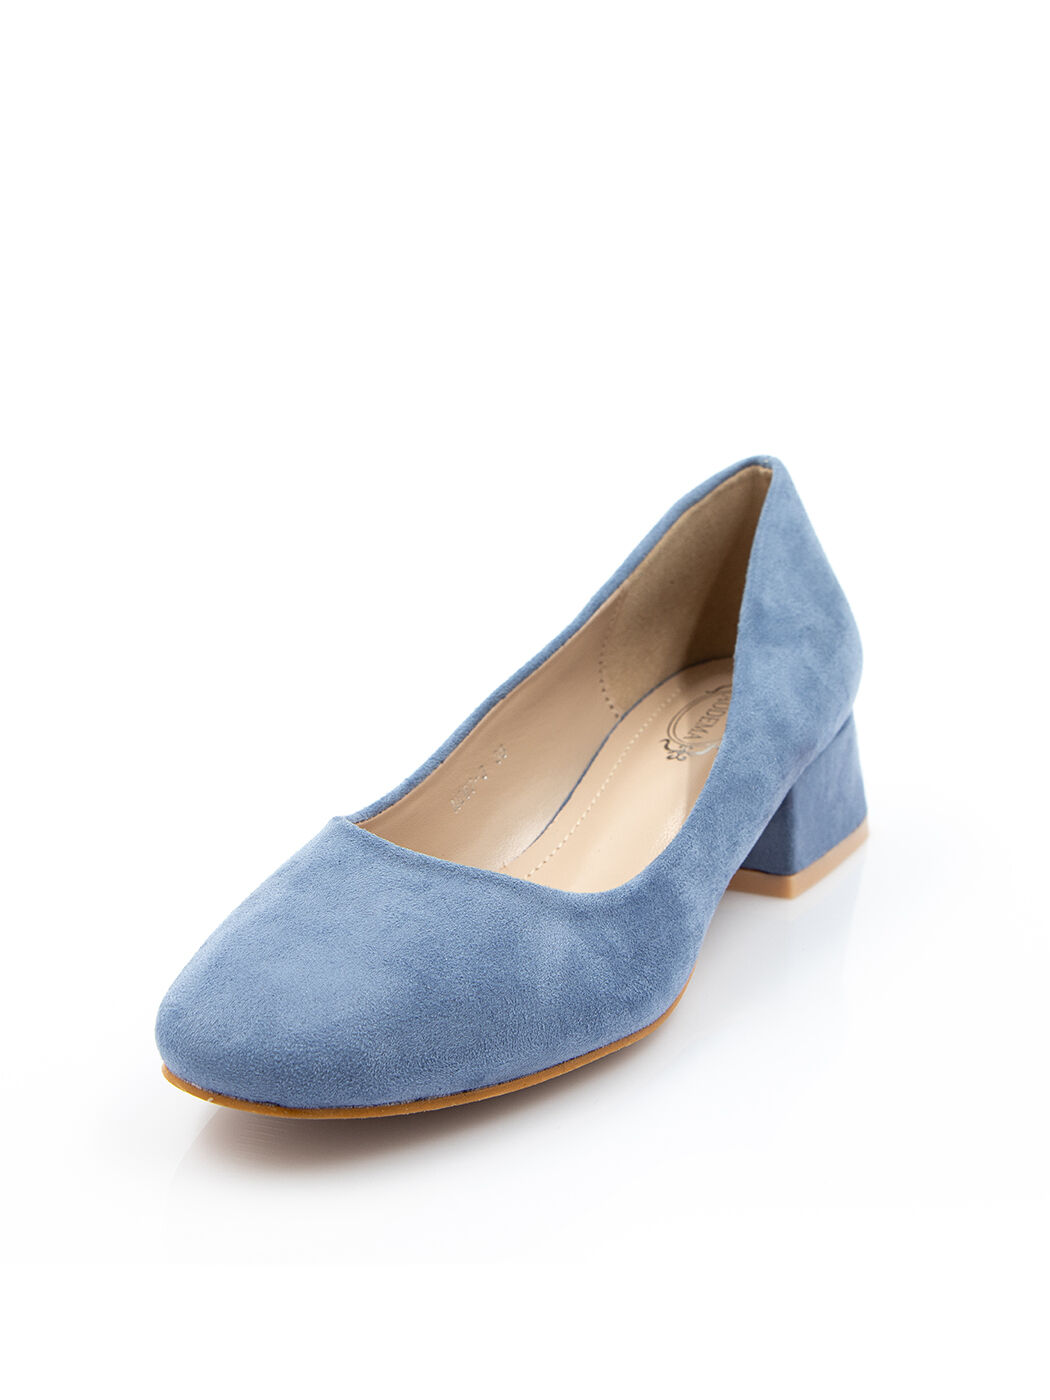 Туфли женские голубые экозамша каблук устойчивый демисезон от производителя 3M вид 2